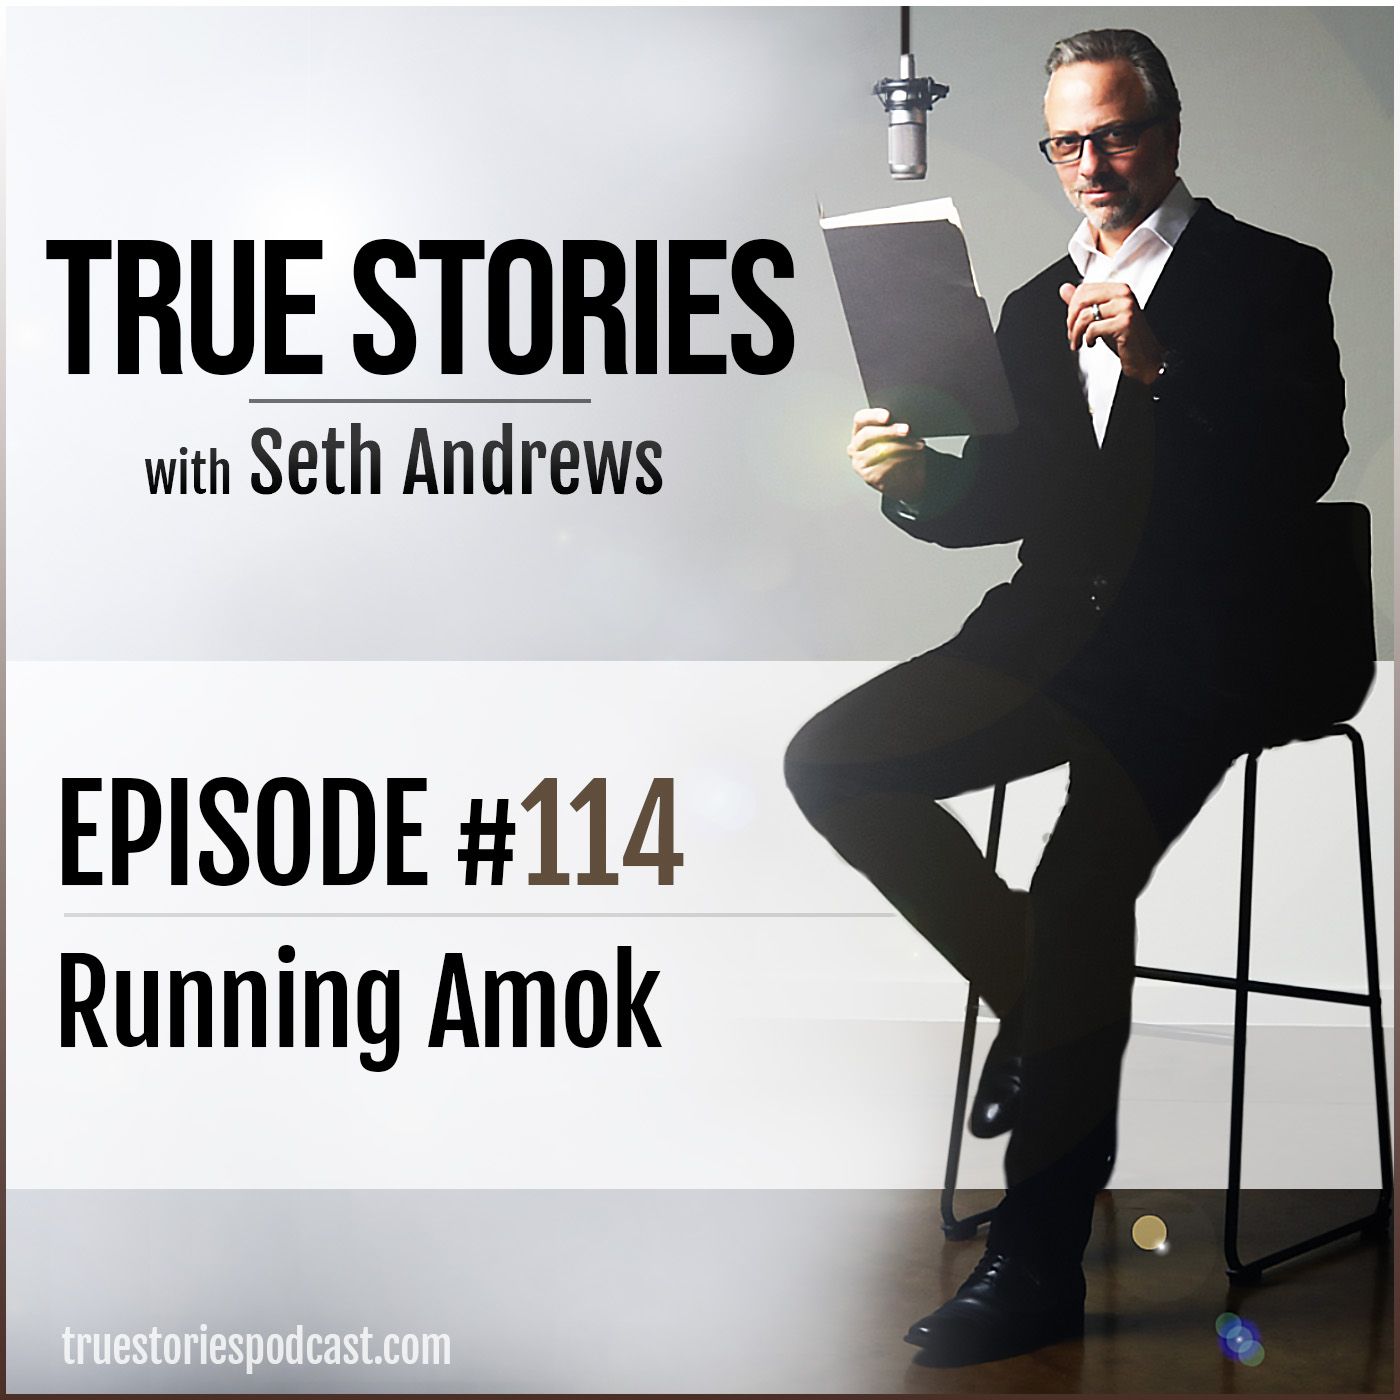 True Stories #114 - Running Amok